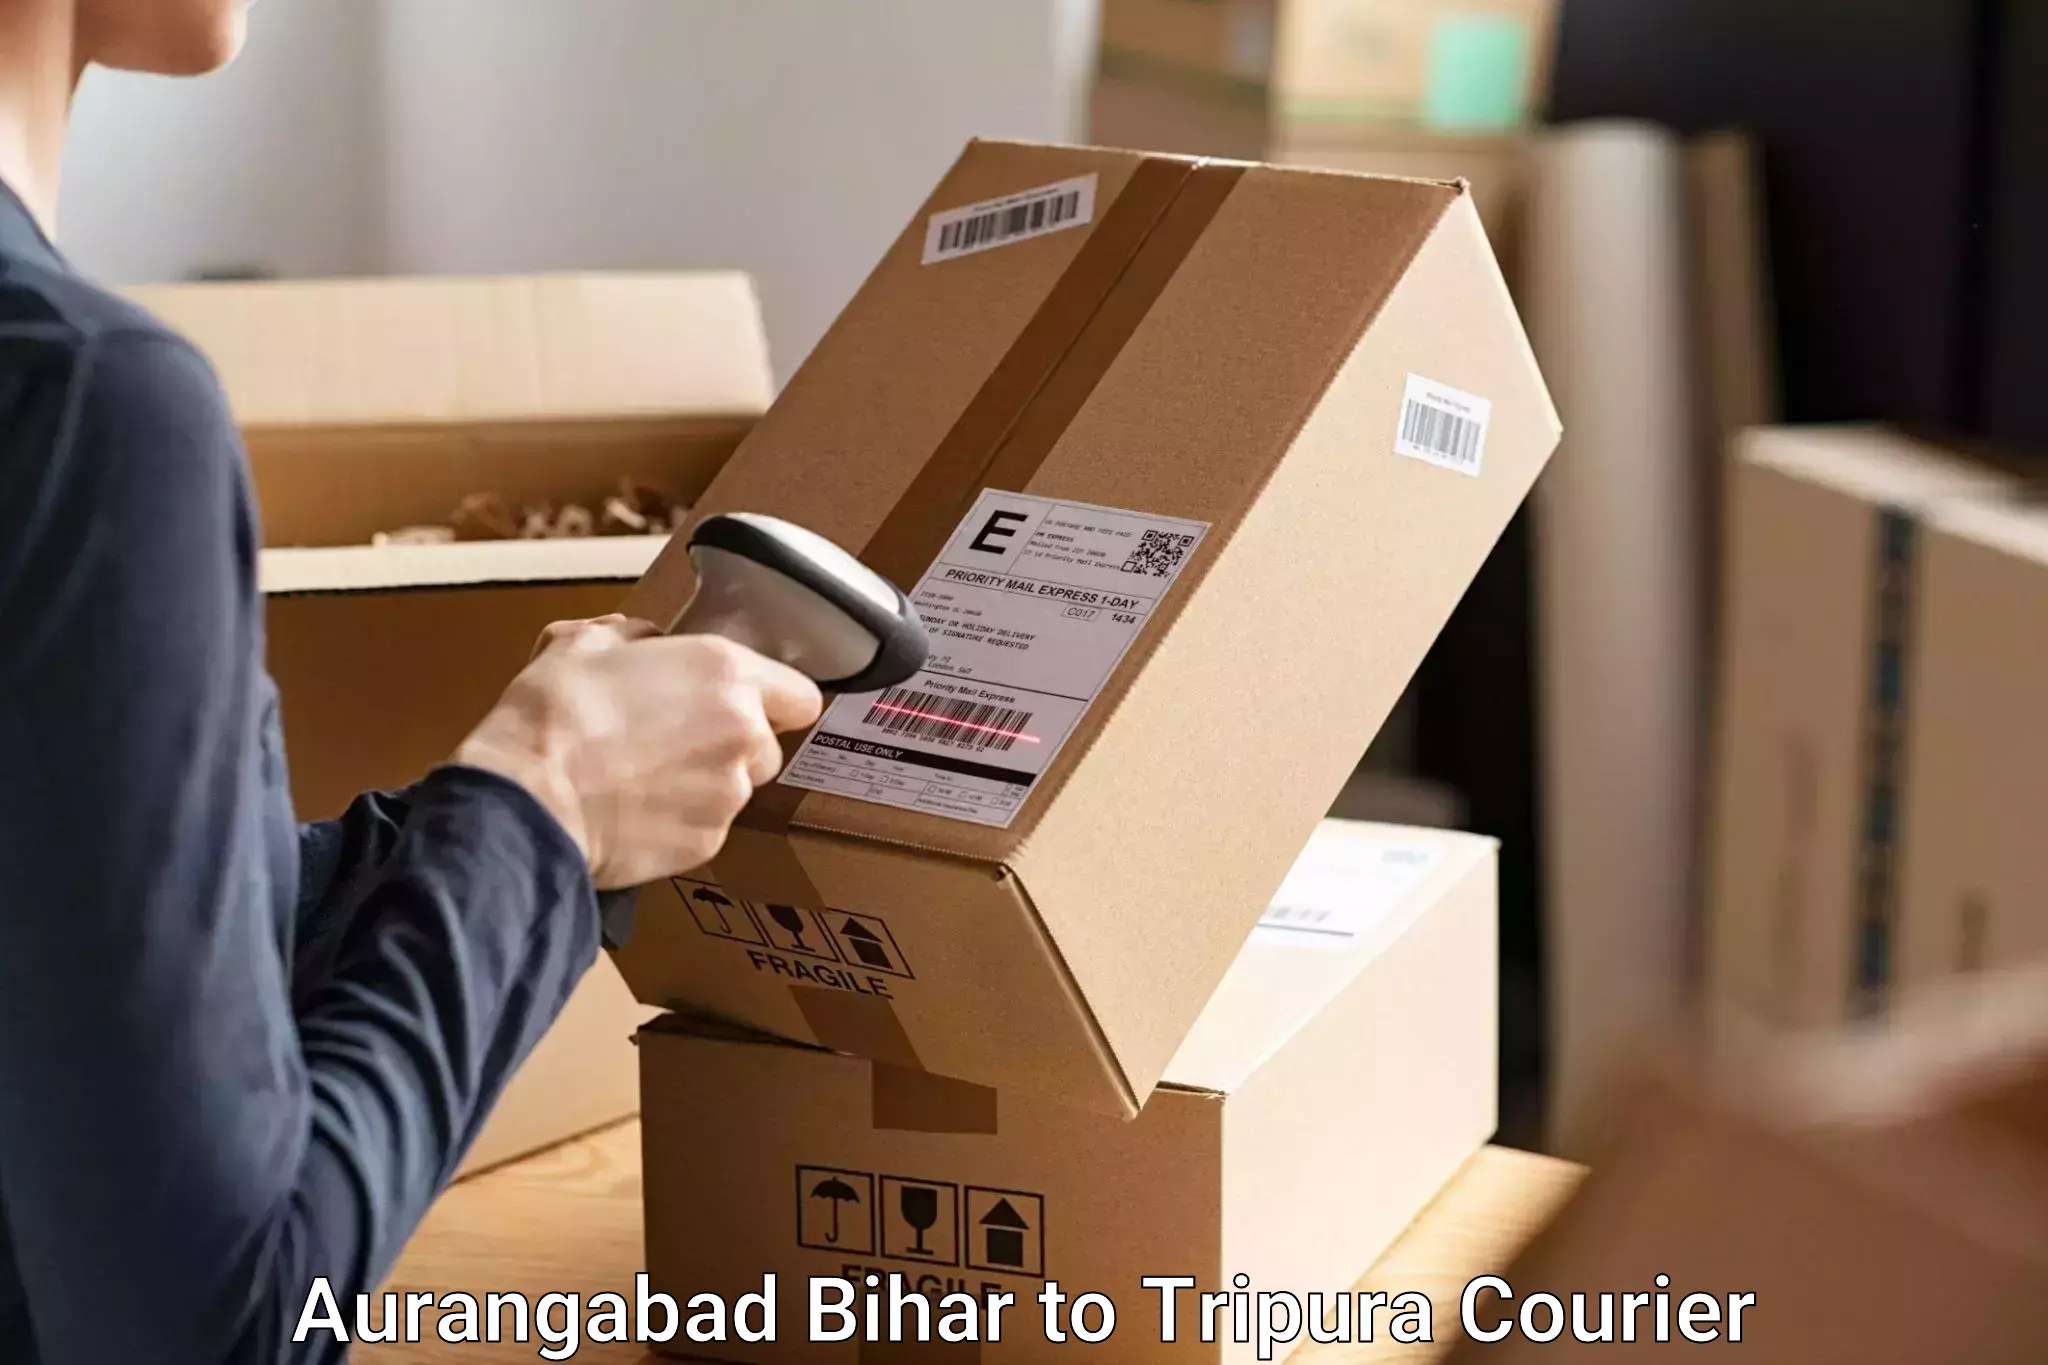 Luggage shipping specialists Aurangabad Bihar to Dharmanagar